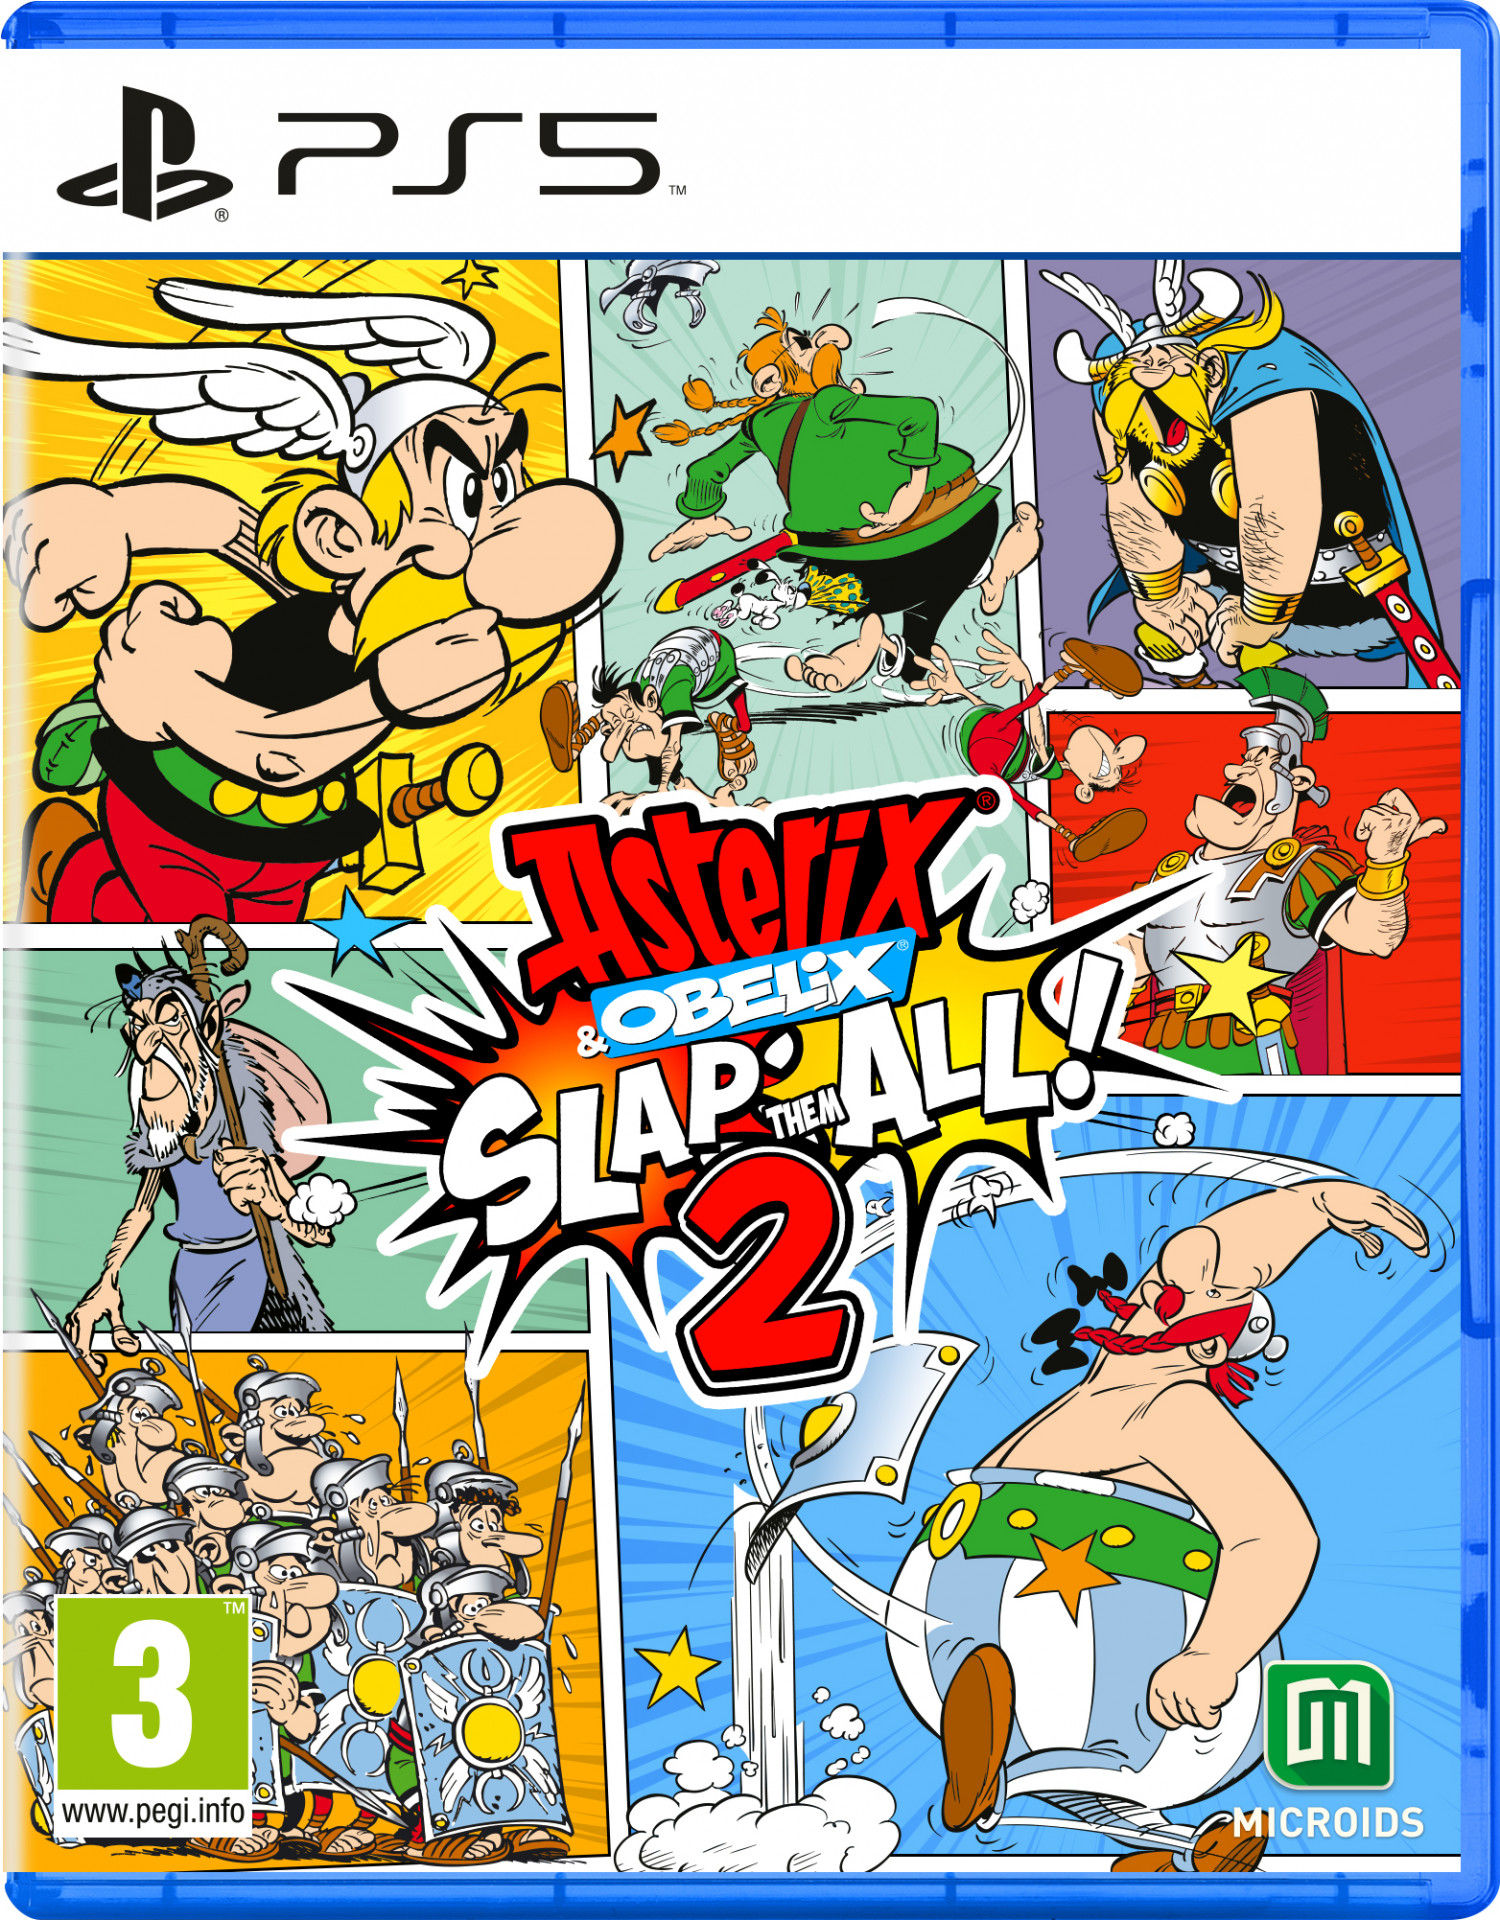 Asterix & Obelix: Slap Them All! 2 PlayStation 5